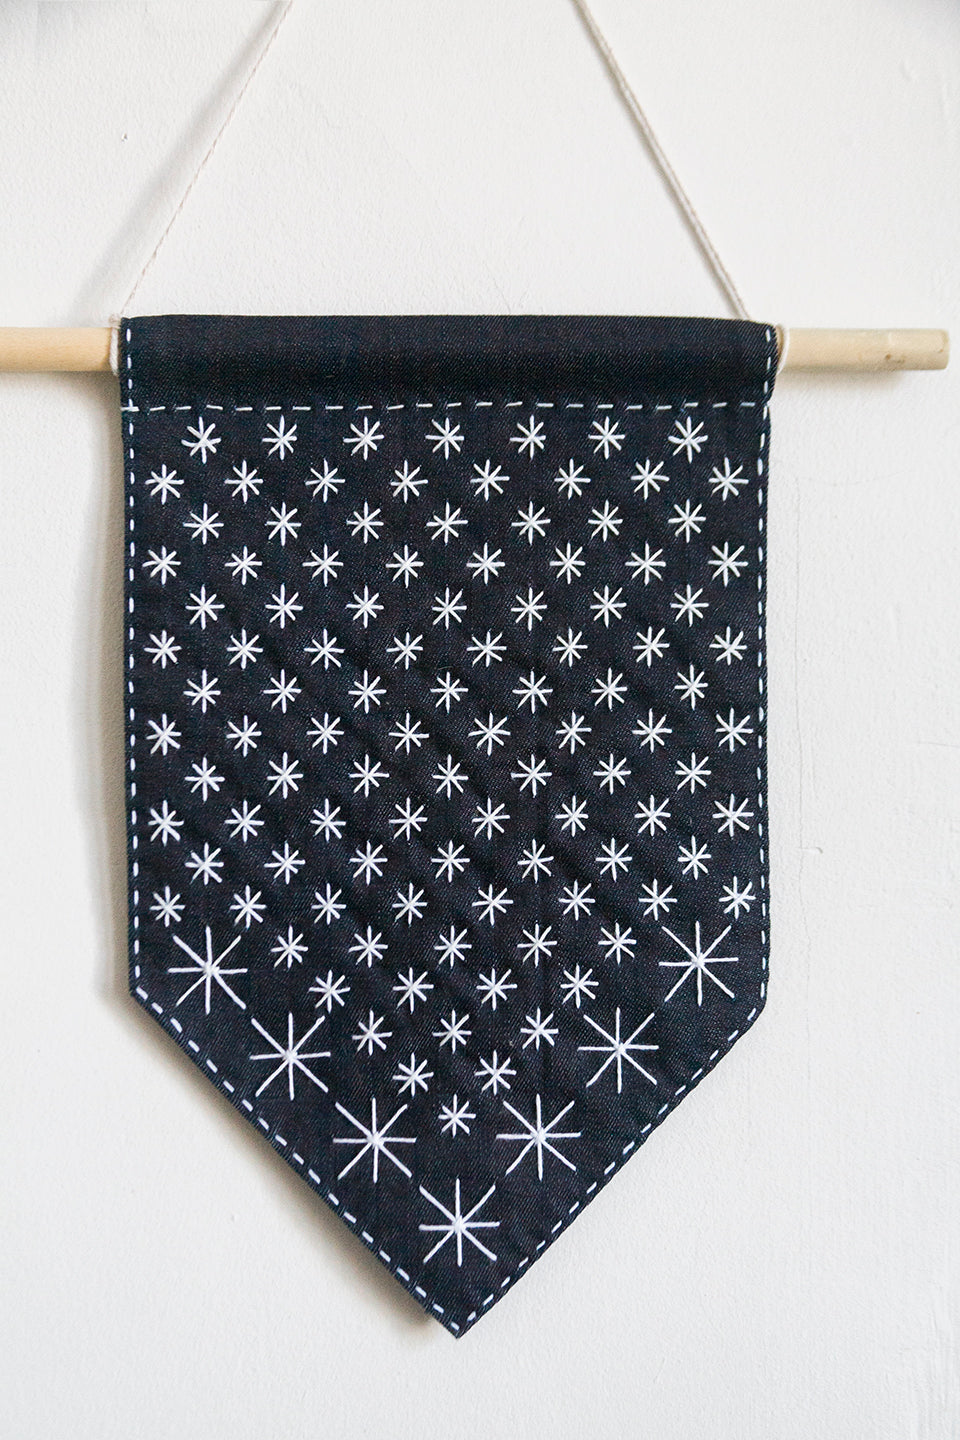 DIY Starry Sashiko Banner Kit